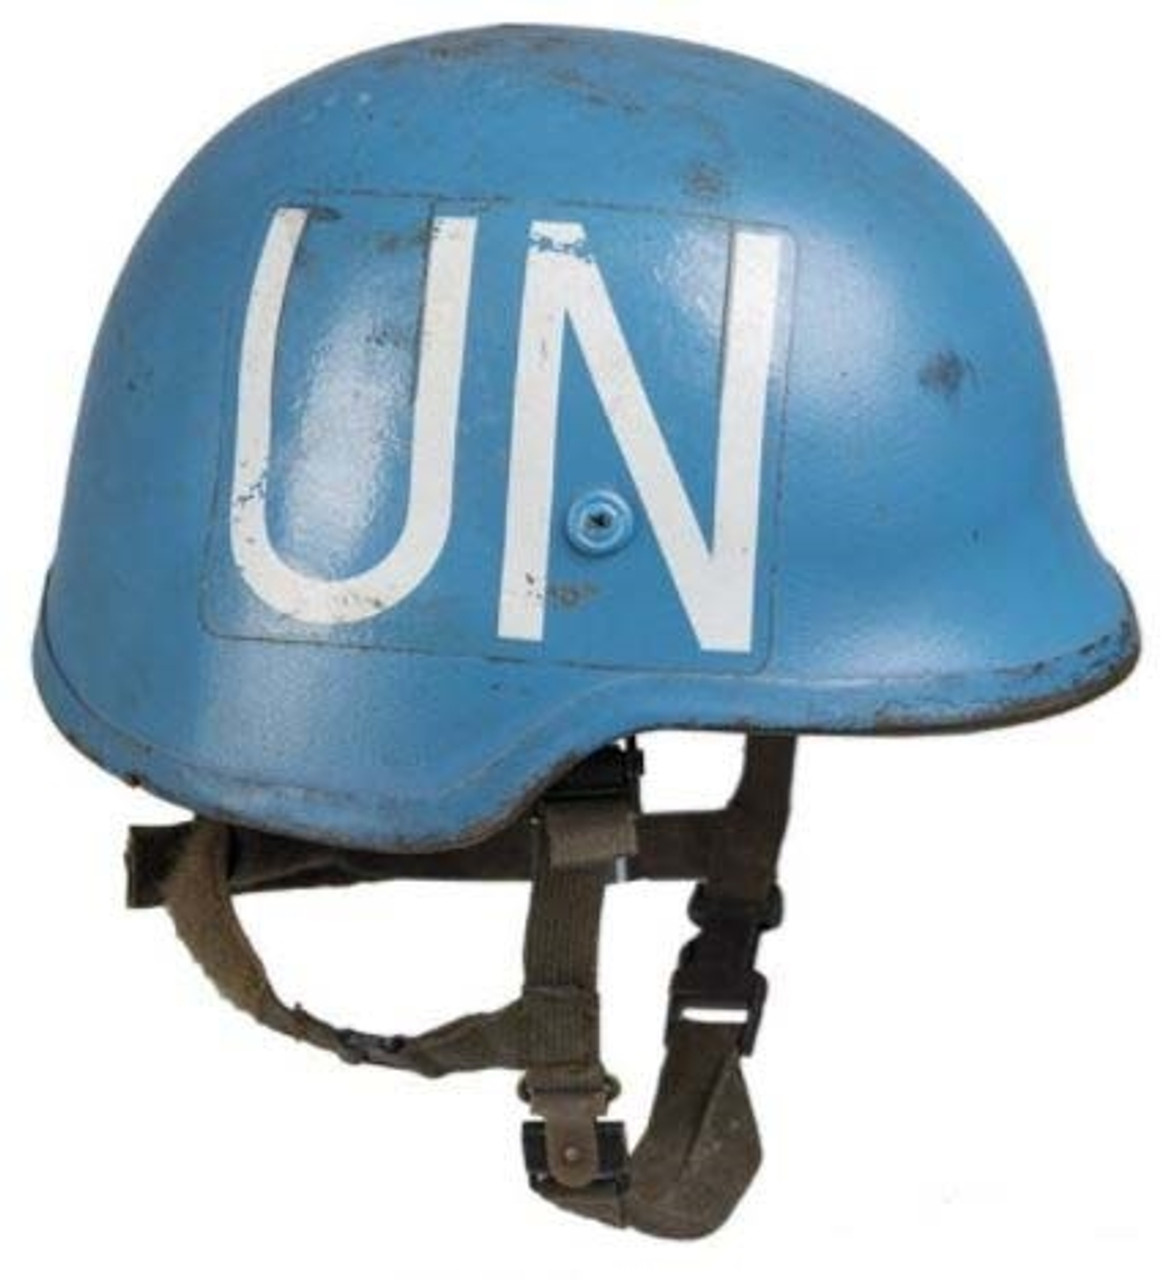 Czech UN Blue Kevlar Helmet from Hessen Antique